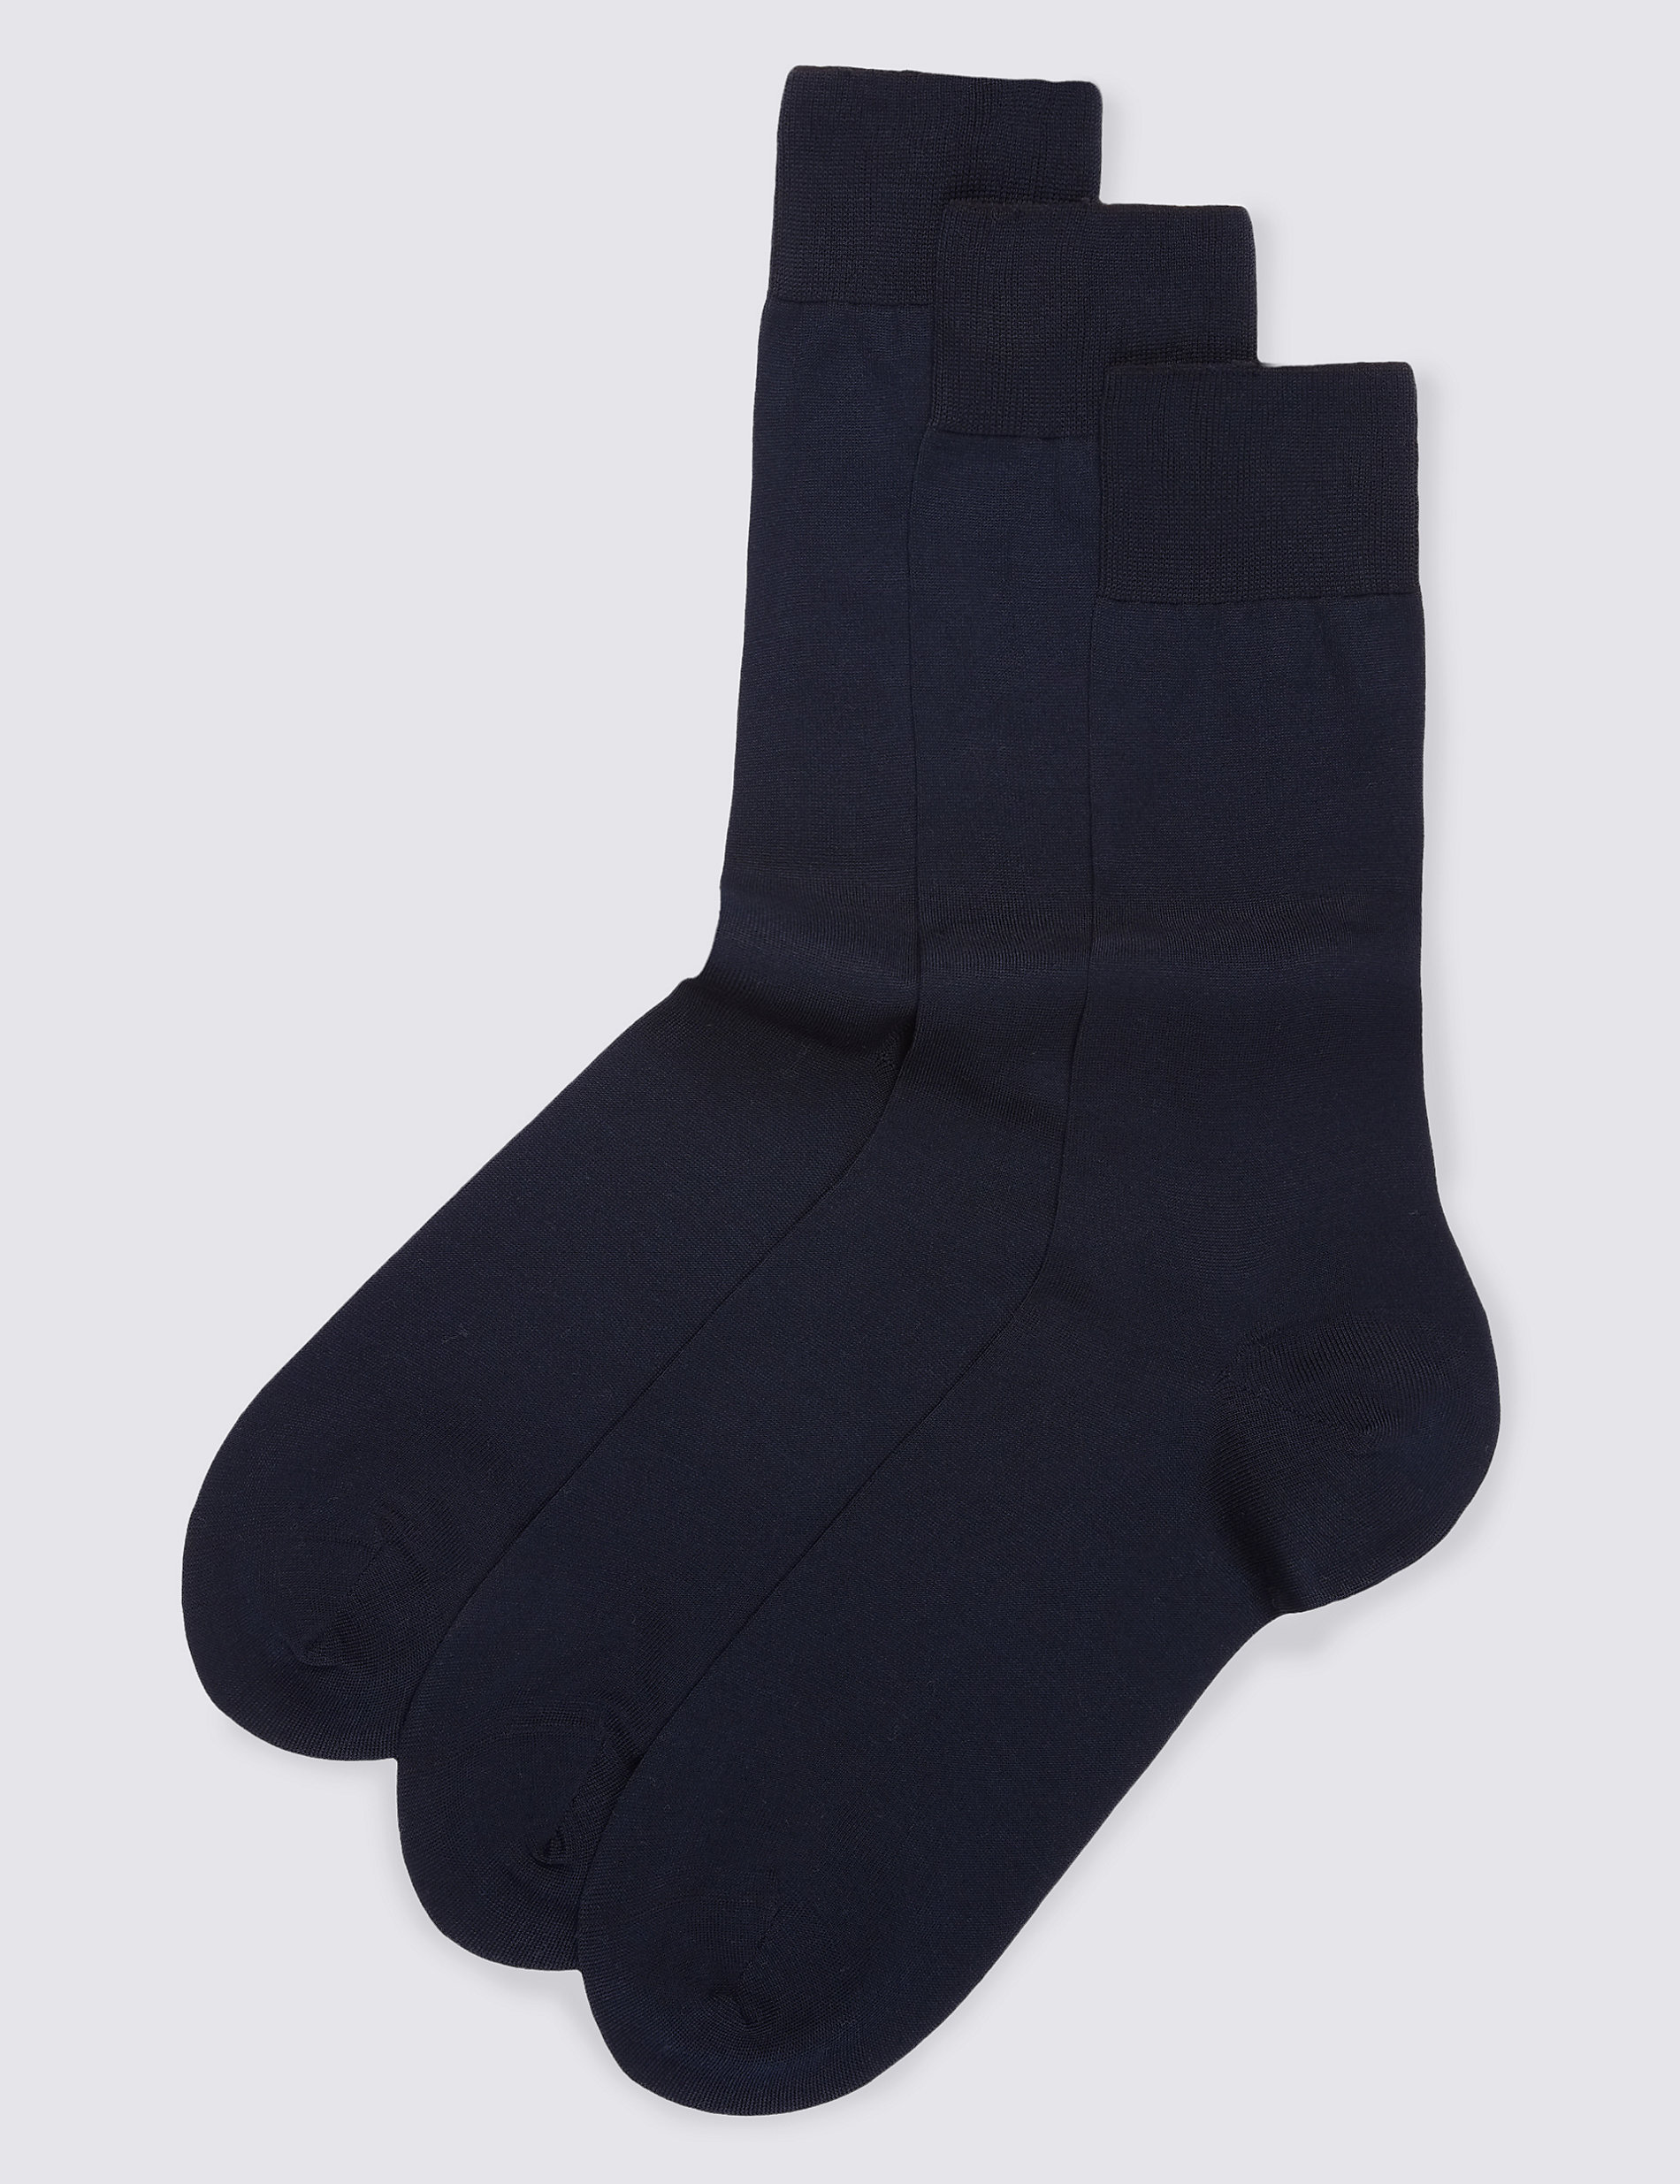 Носки из чистого хлопка, 3 шт. Marks & Spencer носки женские из чистого хлопка 4 пары